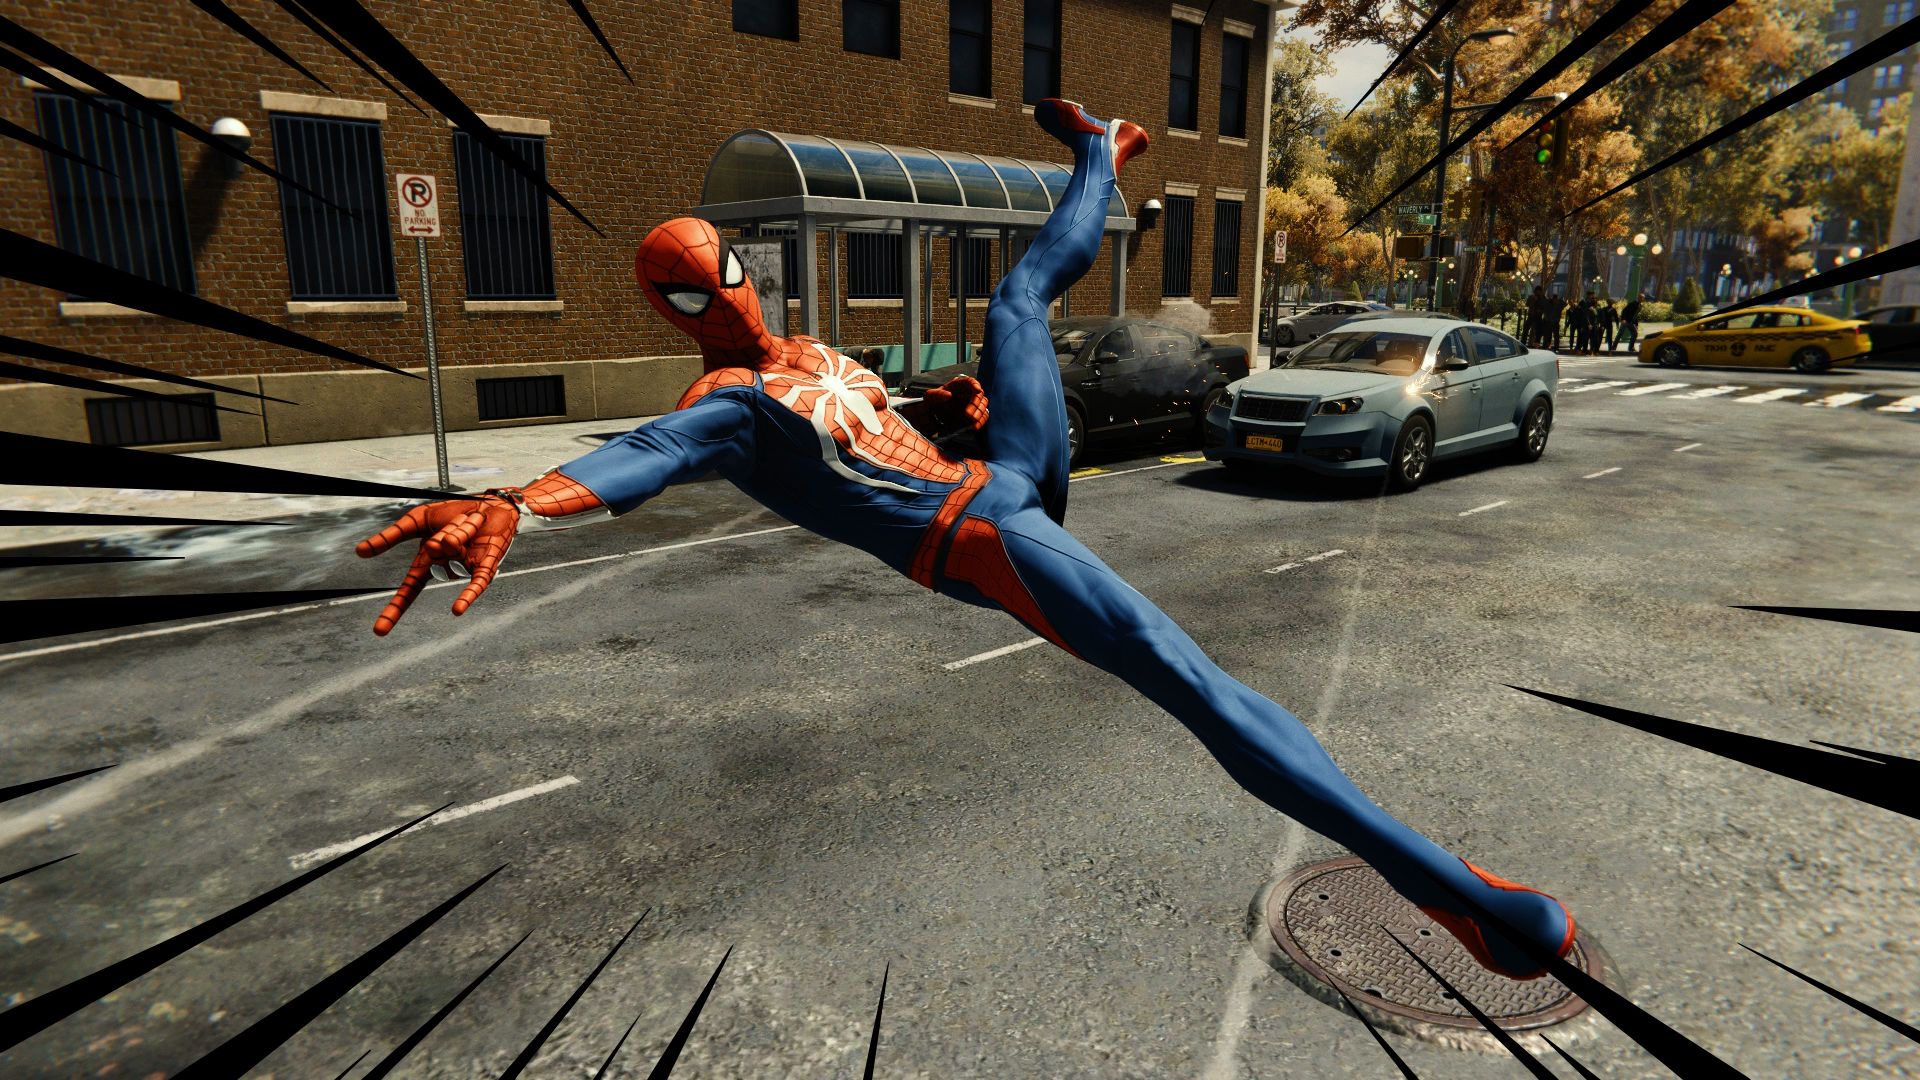 PS4《蜘蛛侠》照相模式加入 蜘蛛侠自拍搞笑十足